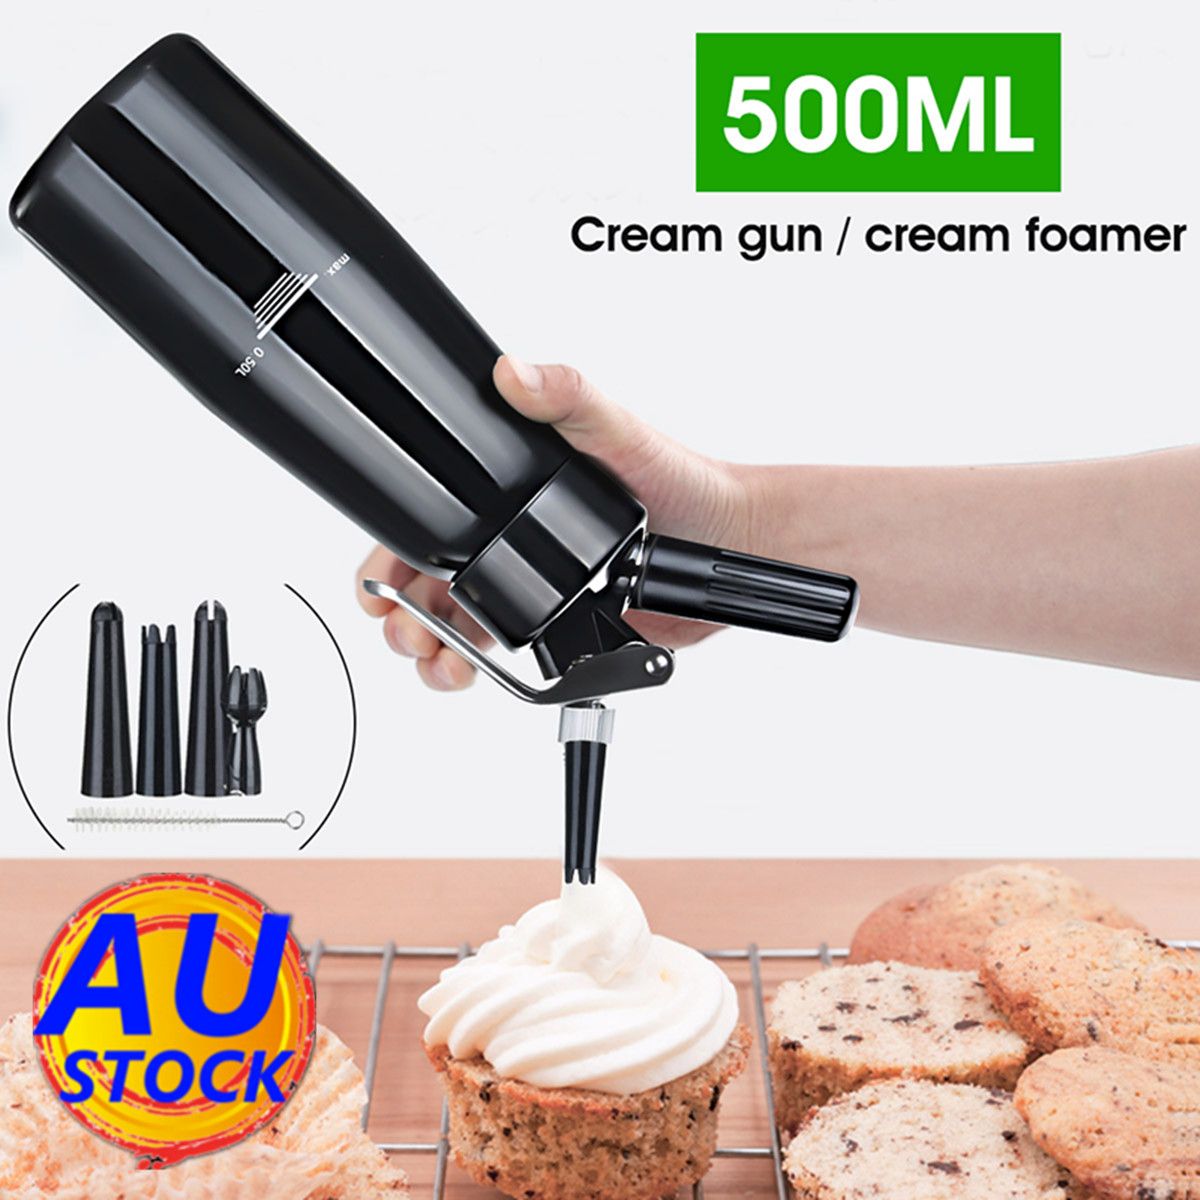 500ml-Black-Cream-Butter-Foam-Whipper-Coffee-Dessert-Cake-Batter-Dispenser-Maker-with-Brush-Nozzle-1351788